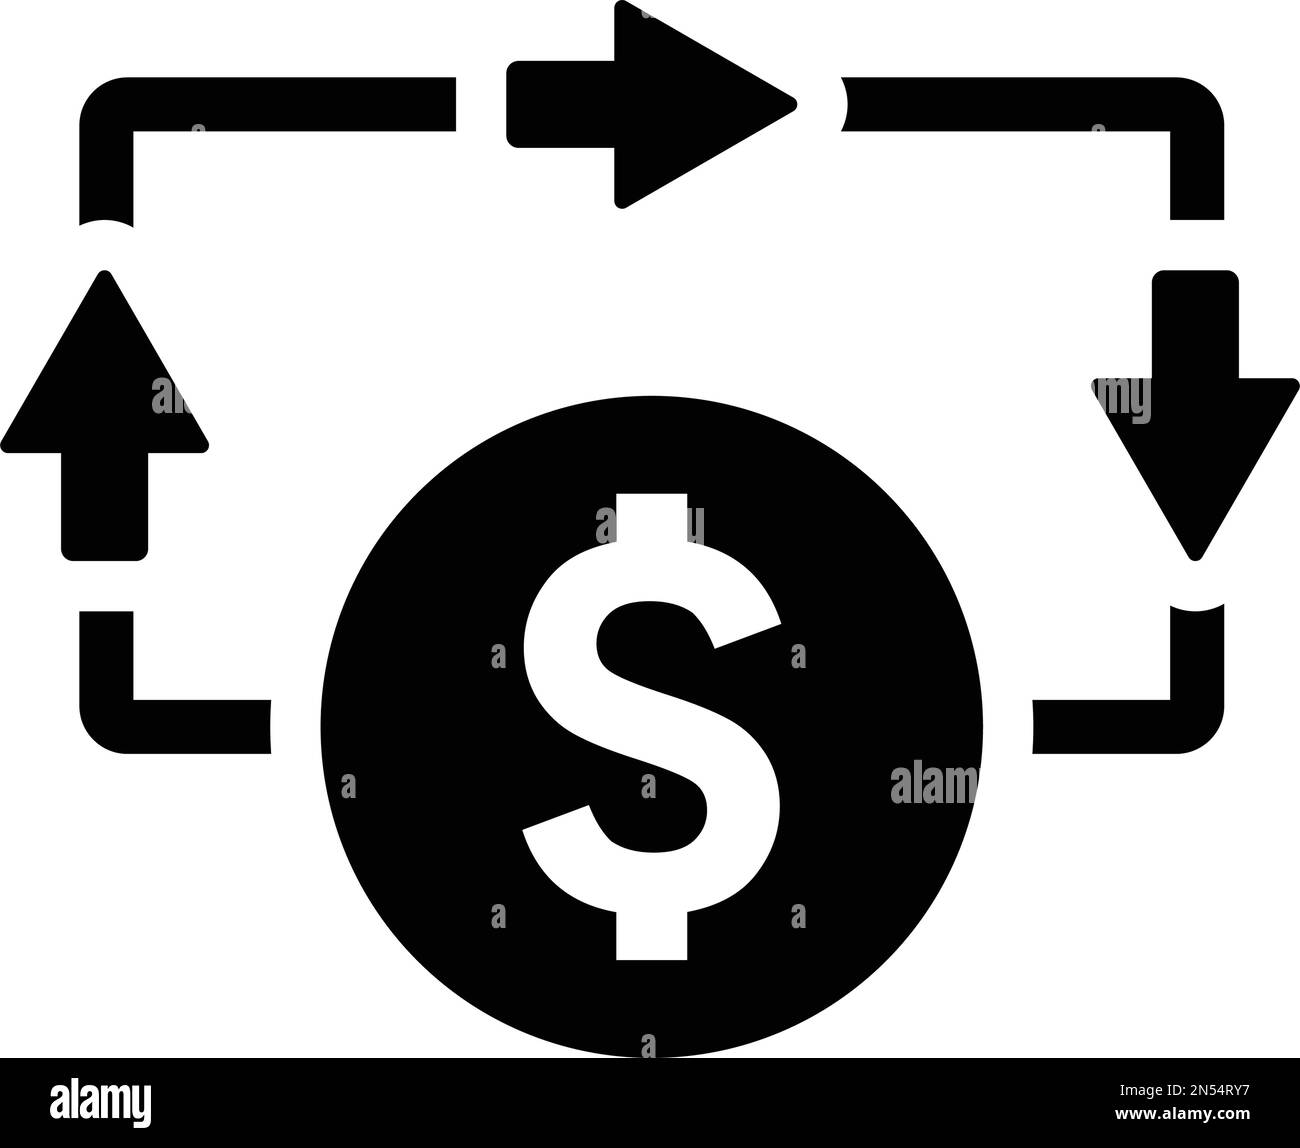 Das Symbol für Fluss, Geld, Bargeld ist auf weißem Hintergrund isoliert. Verwendung für Grafik- und Webdesign oder kommerzielle Zwecke. Vektor-EPS-Datei. Stock Vektor